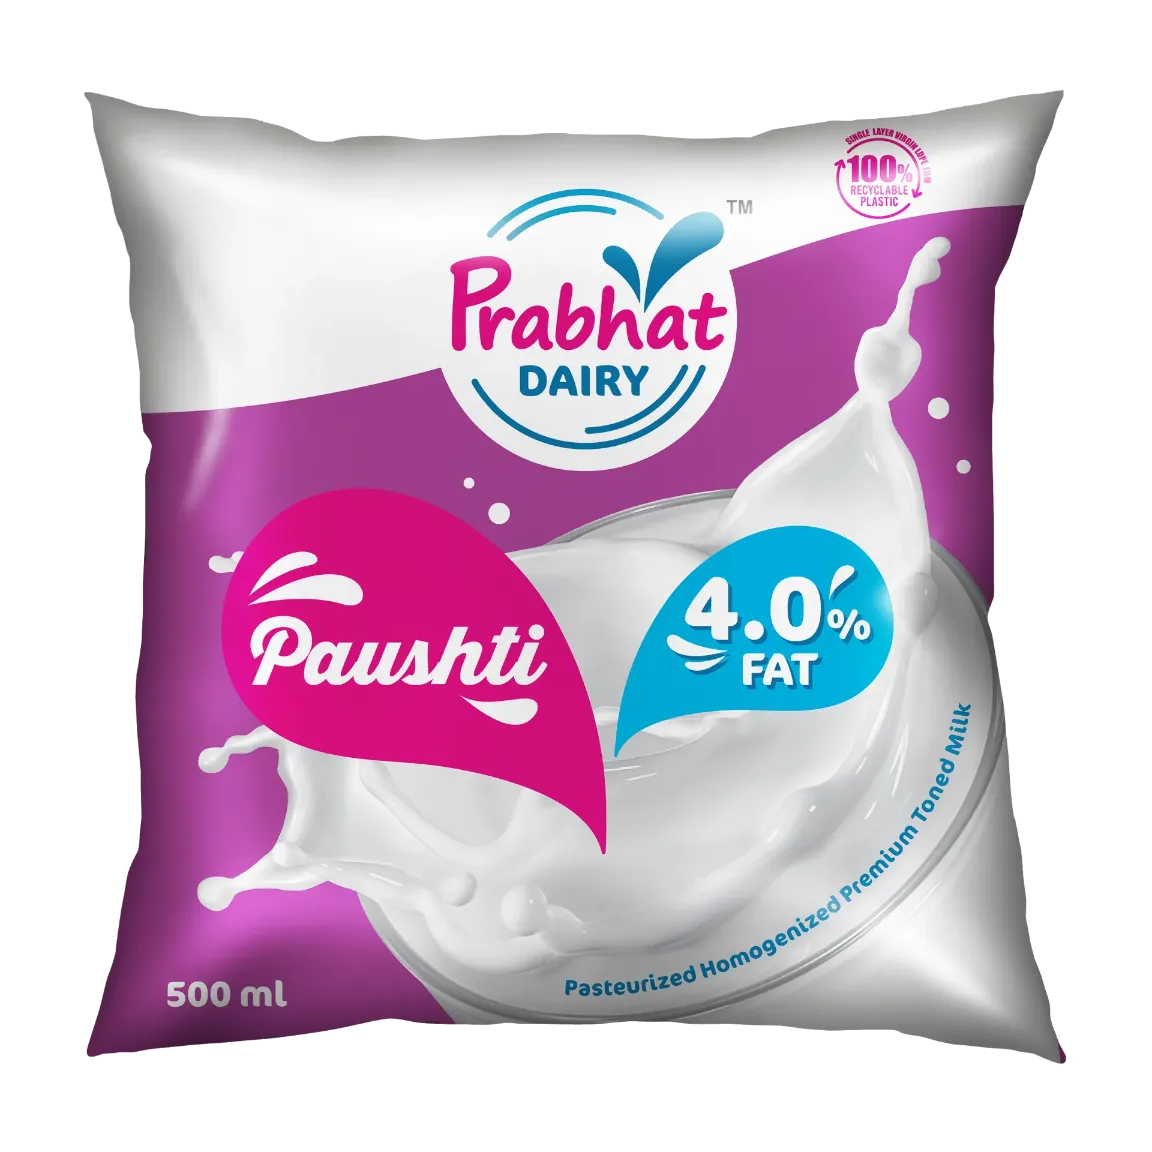 Prabhat Dairy Paushti Milk Pouch 500ml